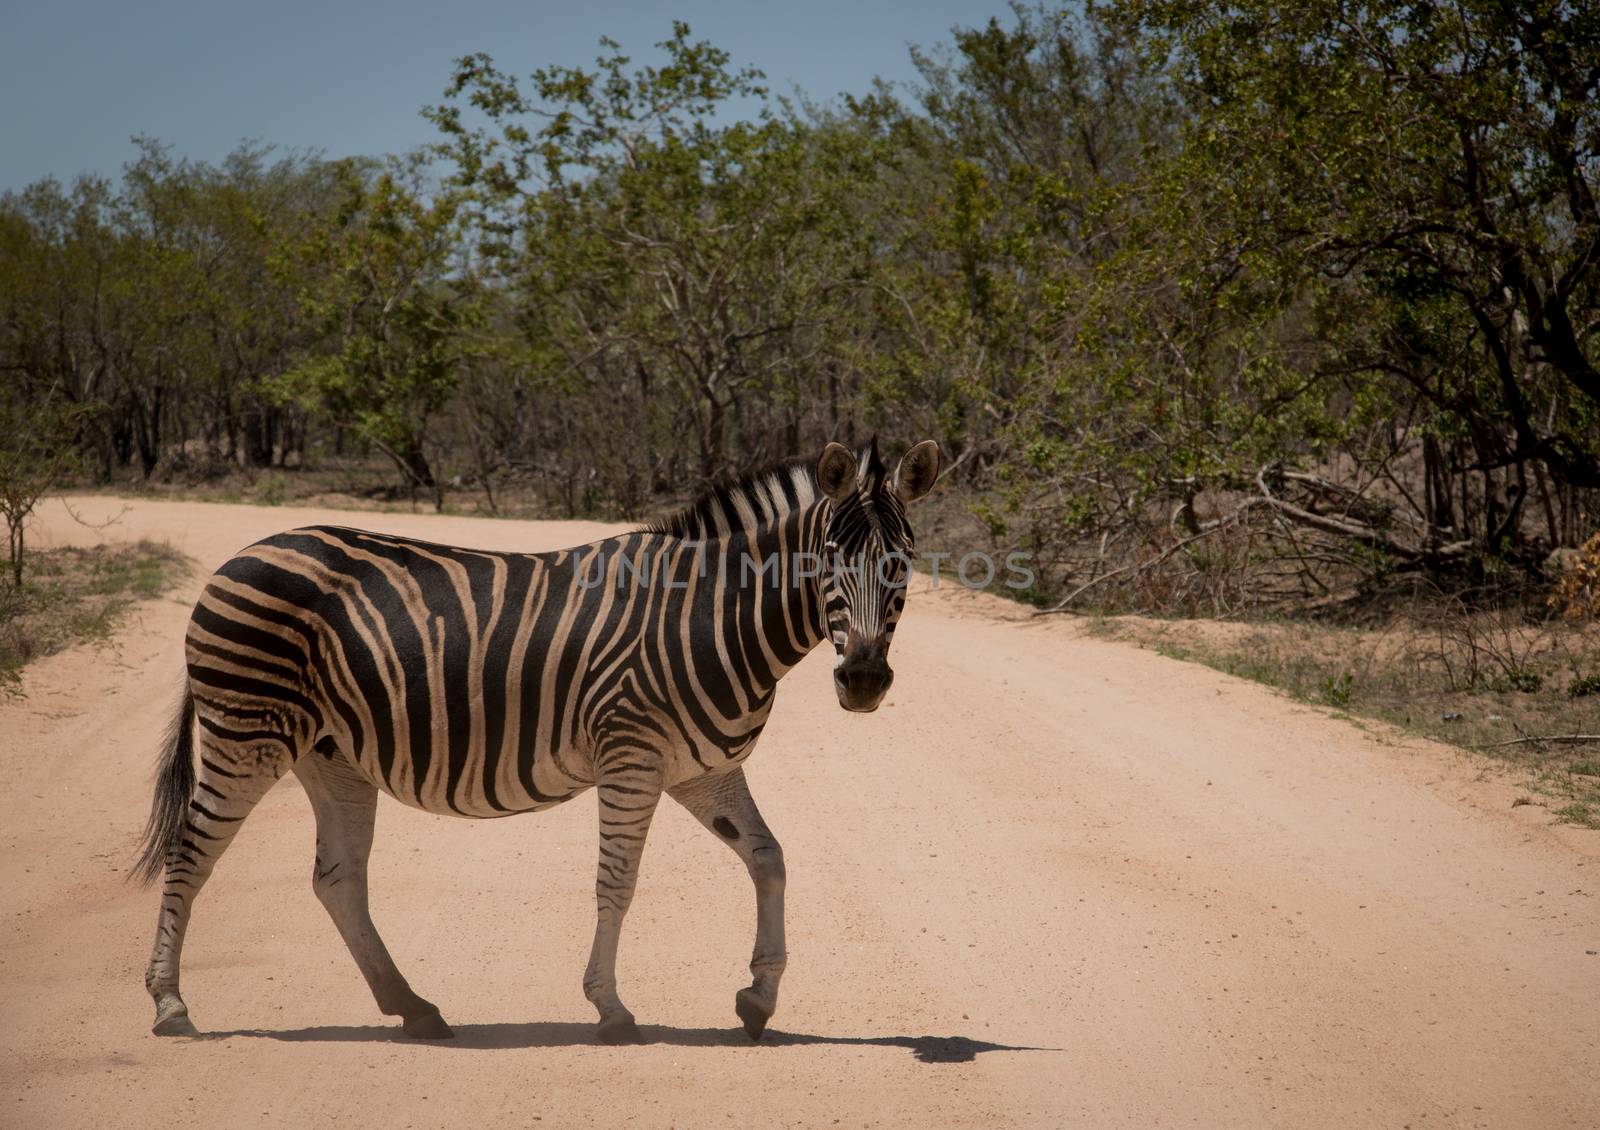 Walking Zebra by Simoneemanphotography